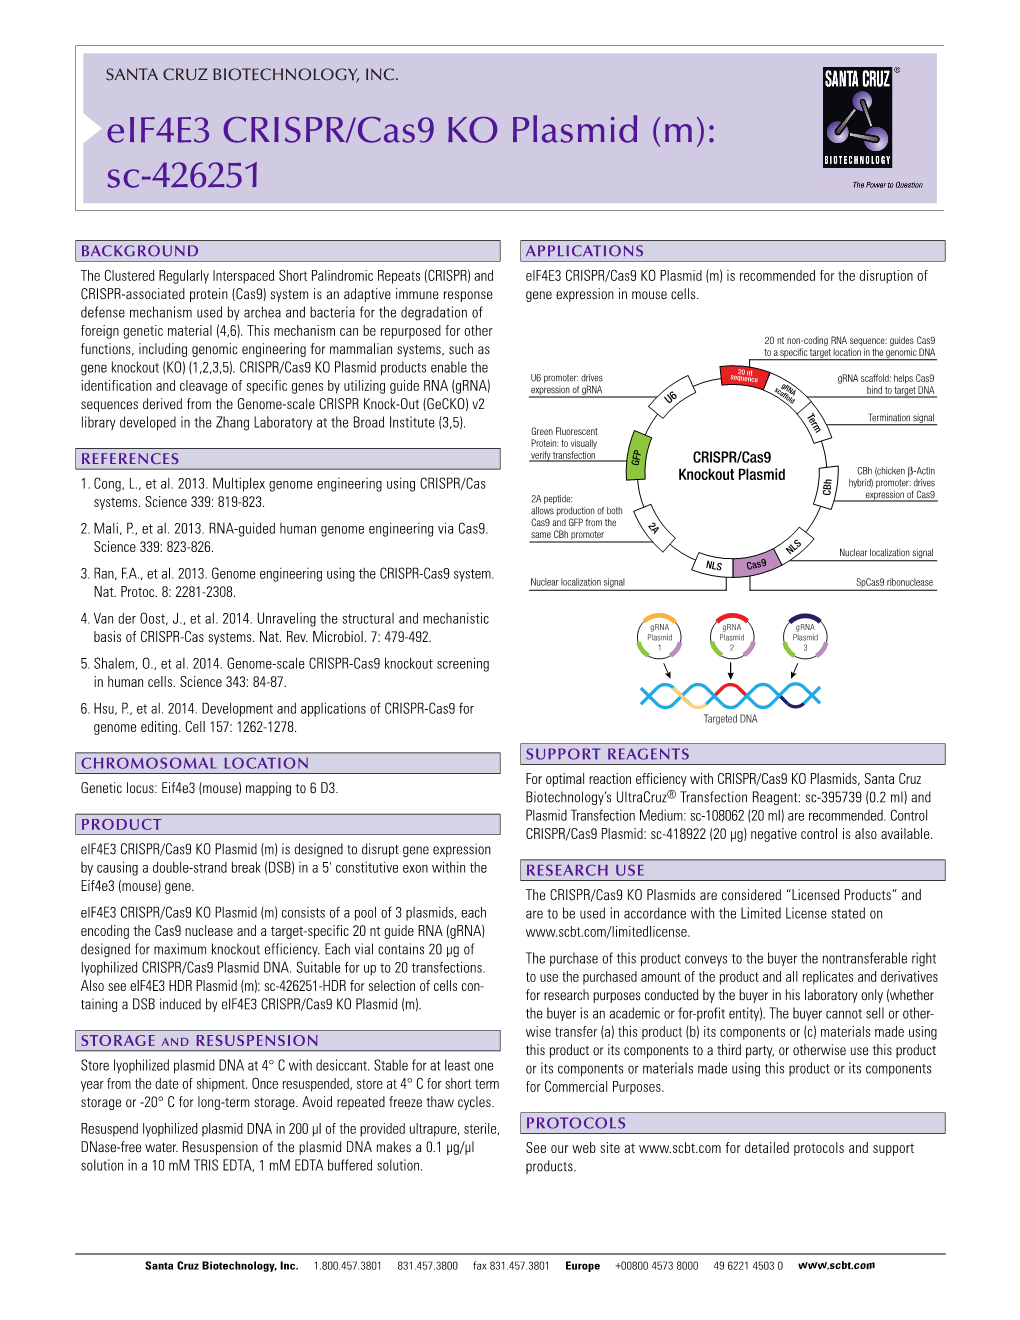 Eif4e3 CRISPR/Cas9 KO Plasmid (M): Sc-426251